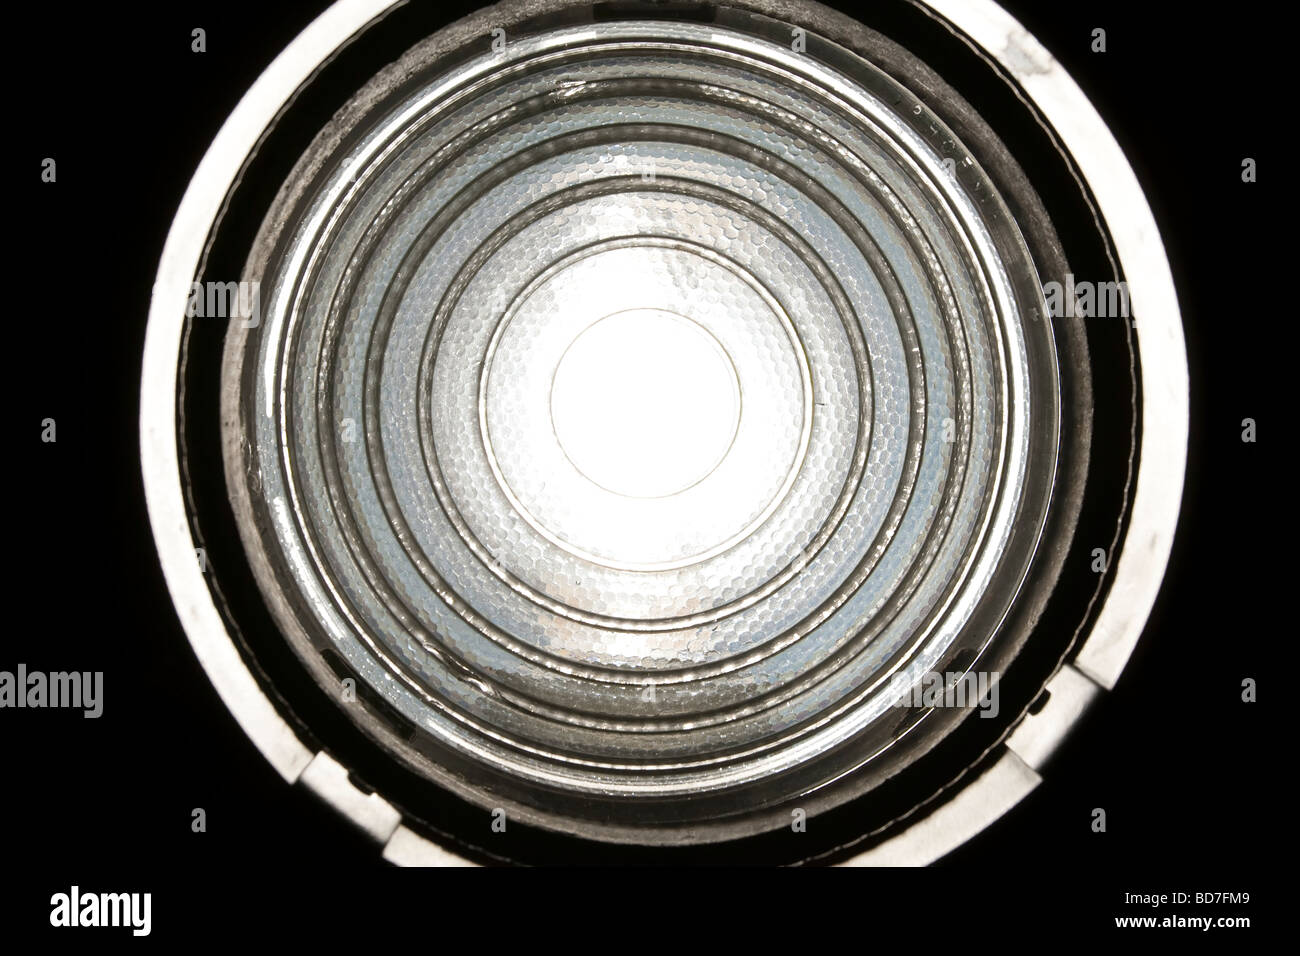 Détail d'une lentille de Fresnel sur studio / théâtre la lanterne. Couramment utilisé pour permettre une large lavage de la lumière contrôlable. Banque D'Images